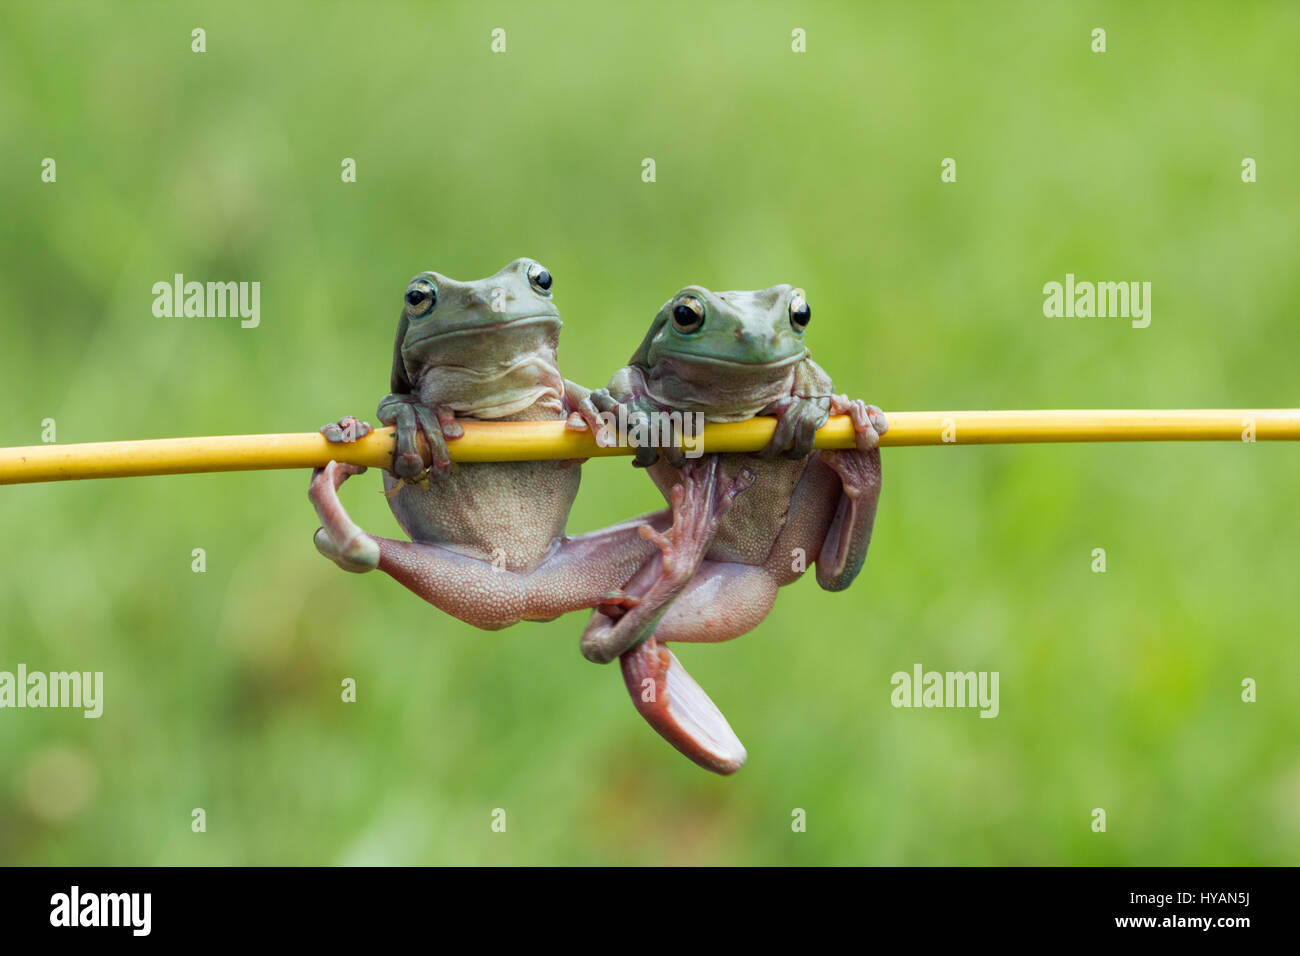 Vous devez être coassant si vous pensez que cette grenouille concurrentiel va partager sa branche avec un rival Kermit. Snaps comique montrent une grenouille d'arbre bénéficiant d'un travail de gymnastique solitaire, mais sa paix fut bientôt troublé par un autre exercice. Il a essayé de passer à l'action. Parce que le premier ne pouvait pas Kermit partager l'appareil un peu de froggy wrestling a débuté. De chin ups pour yoga funky déplace ces grenouilles montrer leur gamme de mouvement et la flexibilité sur leurs chin-up bar de fortune. Le snapper qui ont pris les photos, partage la conception créative à Jakarta, Afsheen Kurit professionnel 3 Banque D'Images